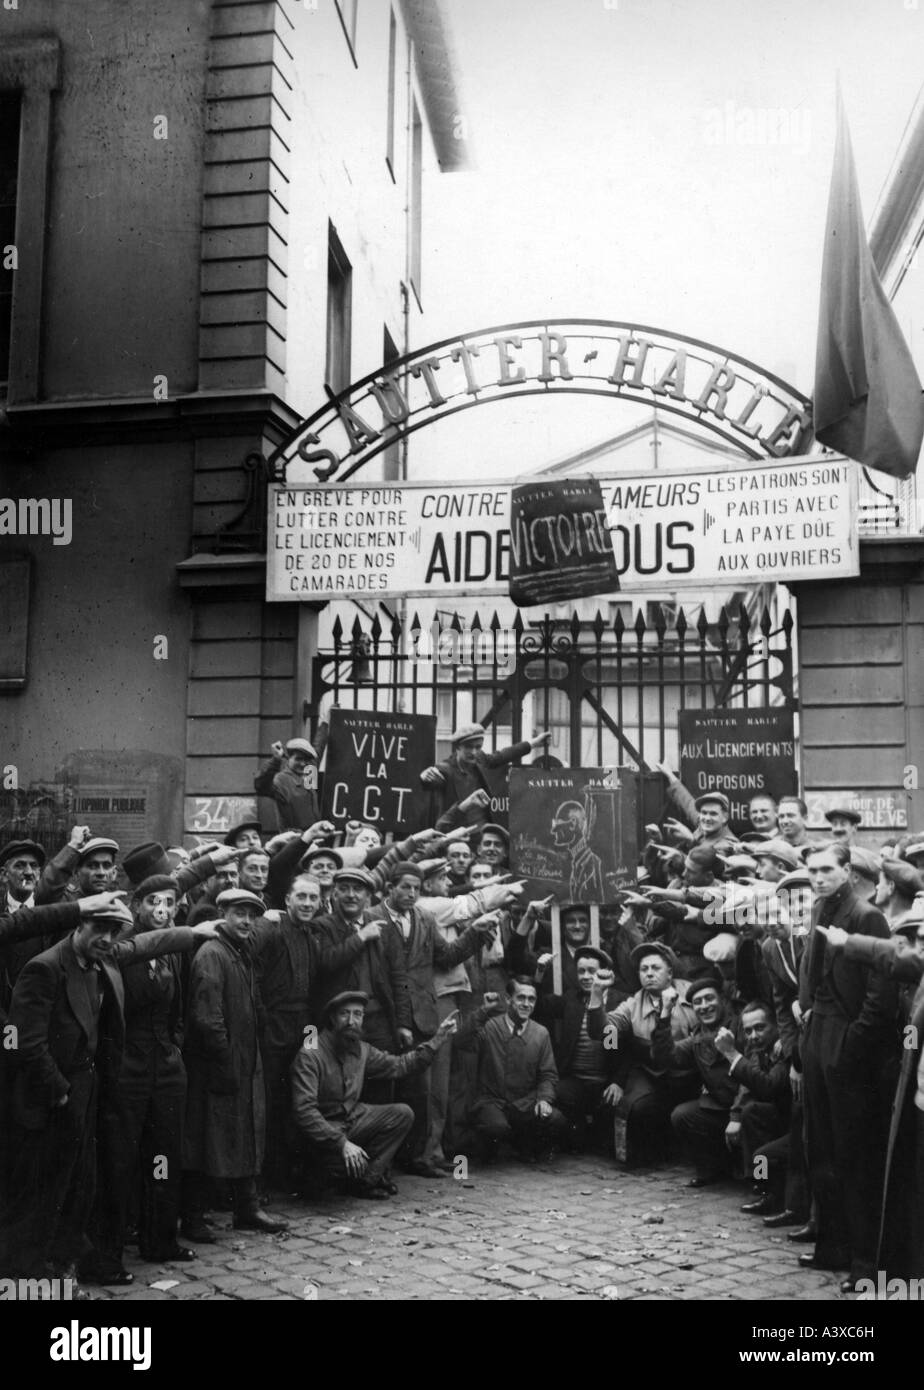 Geografia/viaggio, Francia, politica, stike, picchetto di fronte alla fabbrica Sautter-Harle, Parigi 17.10.1936, Foto Stock